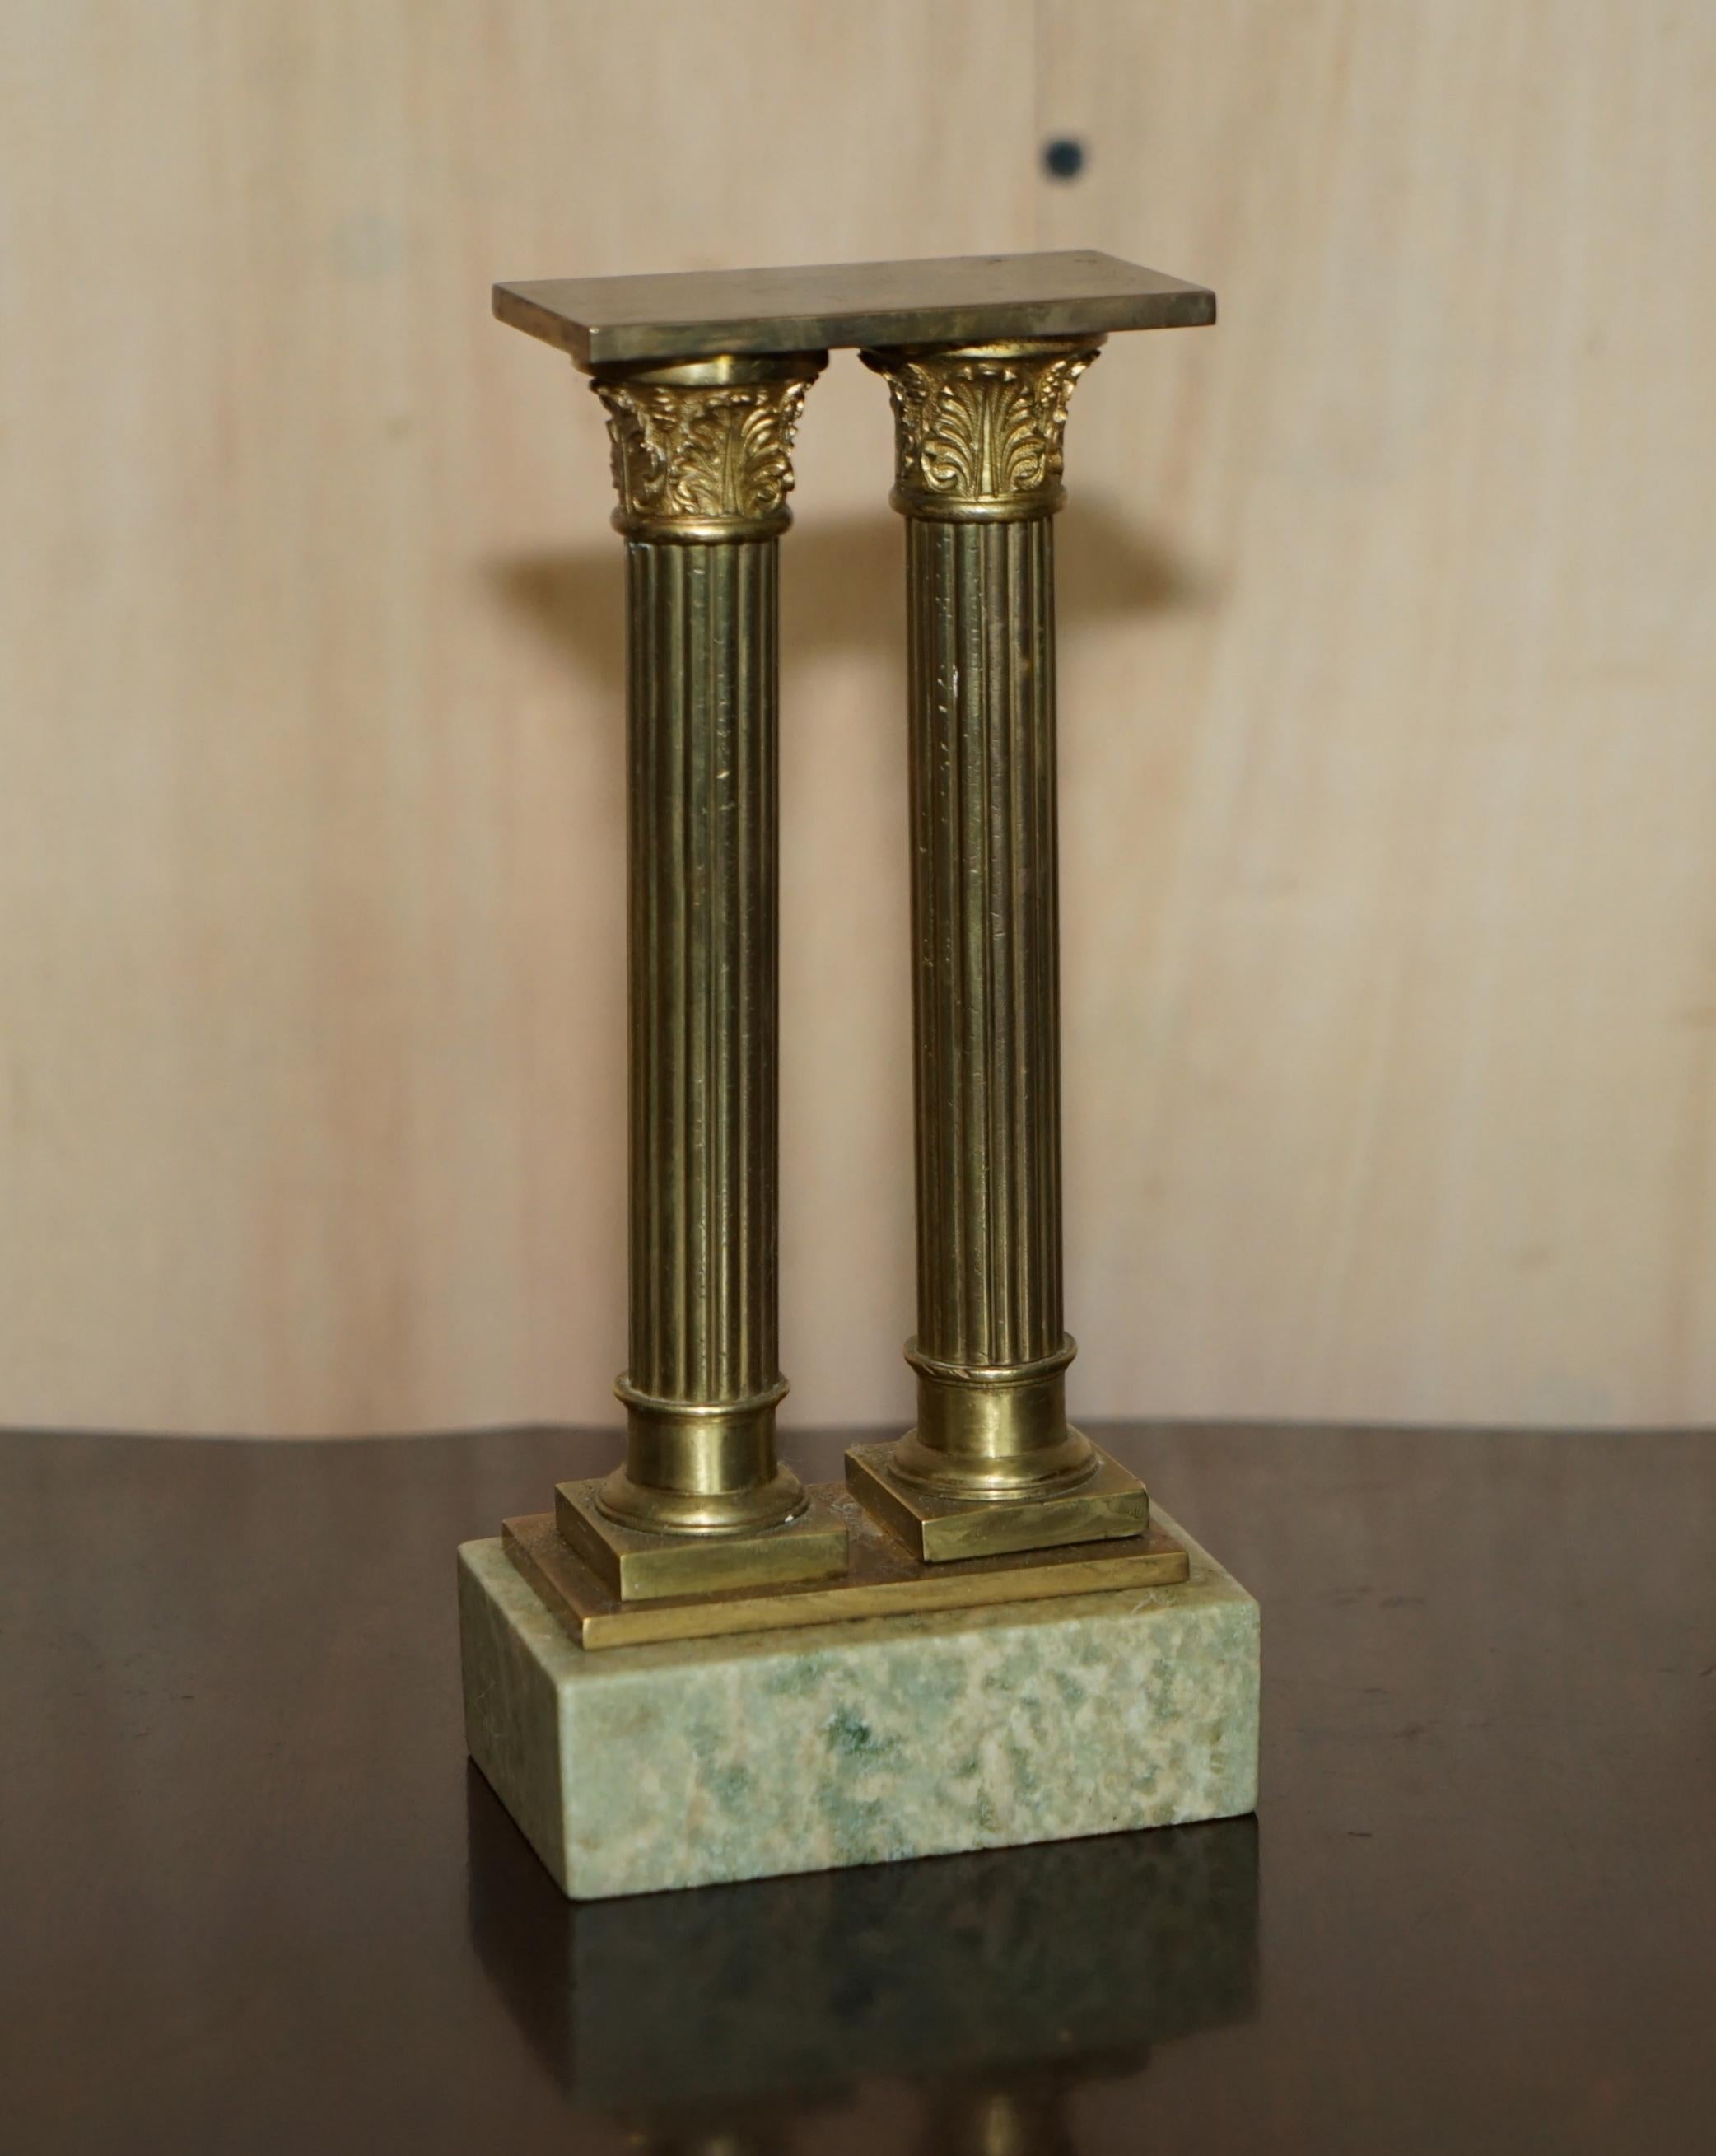 Nous sommes ravis d'offrir à la vente cette paire de colonnes originales victoriennes en marbre et laiton de la ruine romaine du Grand Tour.

Une paire originale merveilleuse, ceux-ci sont de la taille d'un bureau et très collectable, ces piliers